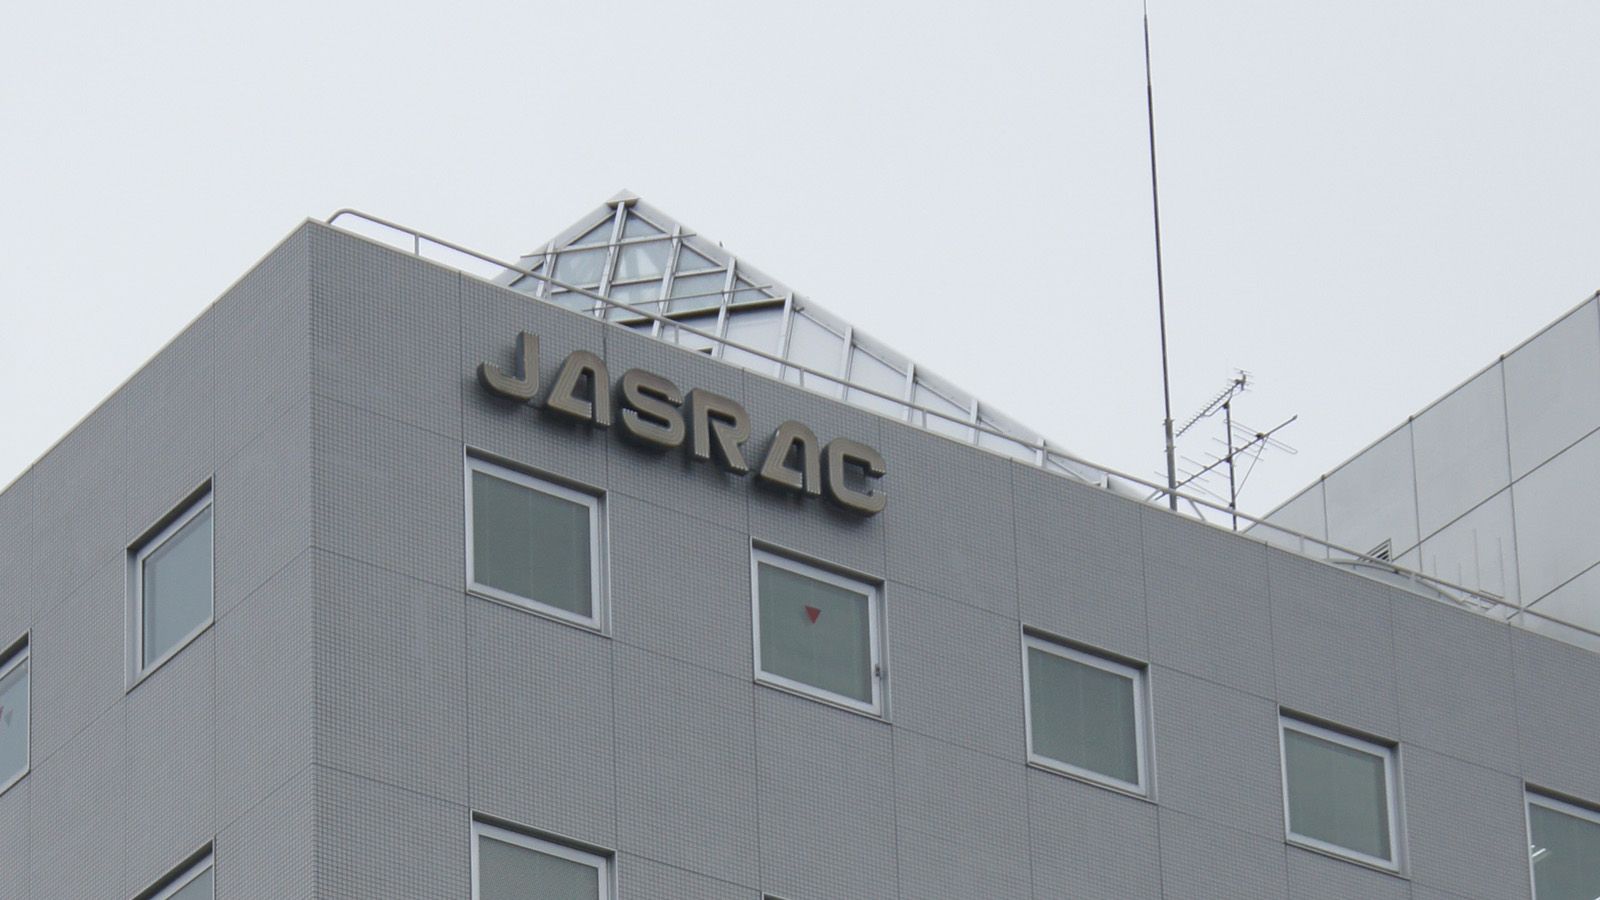 音楽教室のレッスン楽曲に著作権料払うべきか 東京地裁判決はJASRAC勝利､続く双方の対立 | ゲーム・エンタメ | 東洋経済オンライン